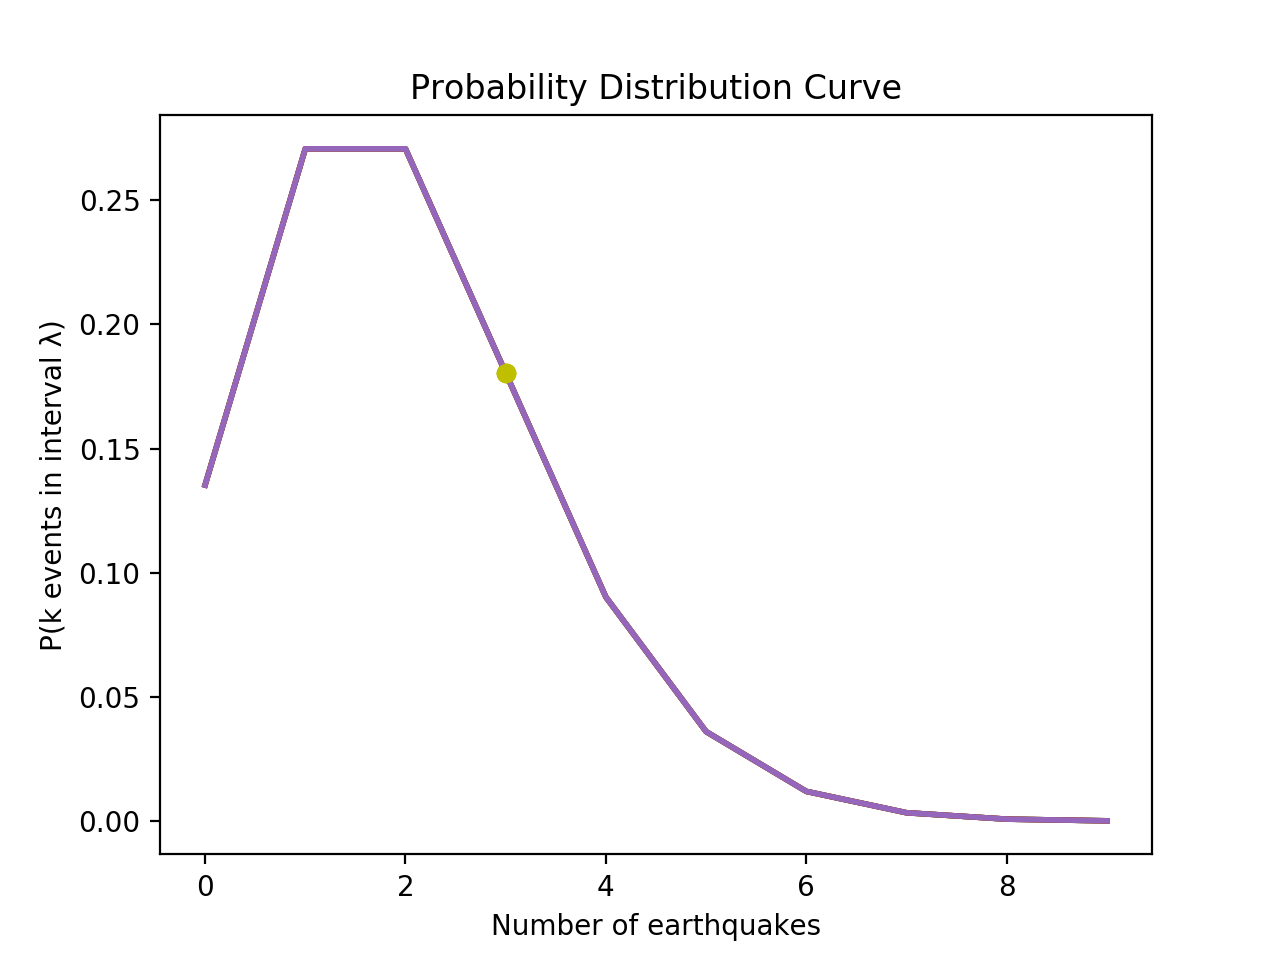 A probability distribution graph